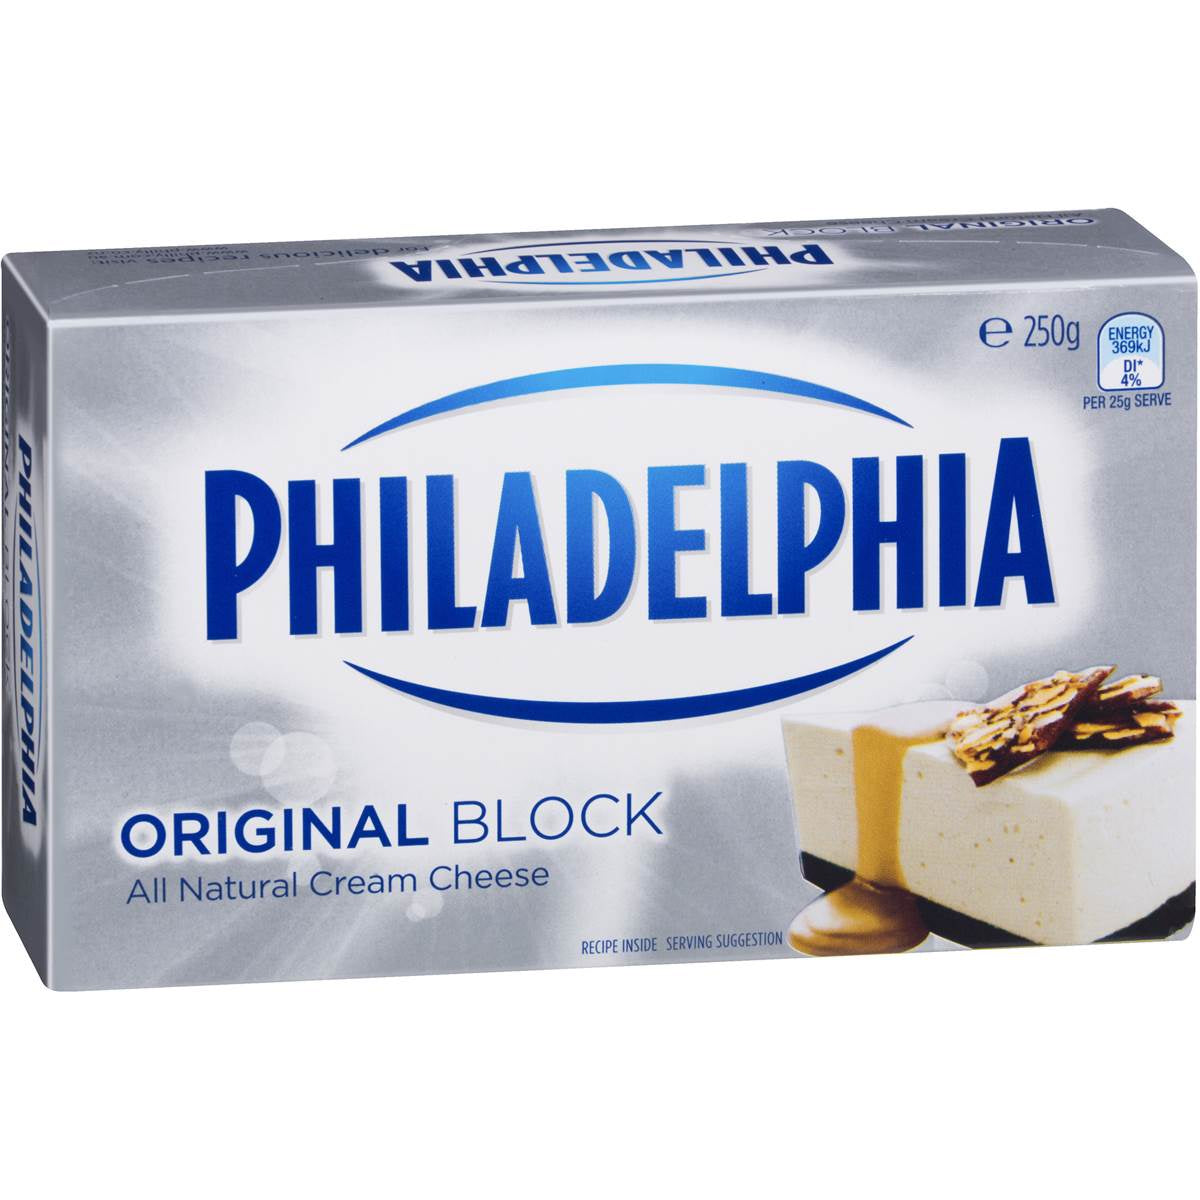 Philadelphia Original Block Cream Cheese 250g